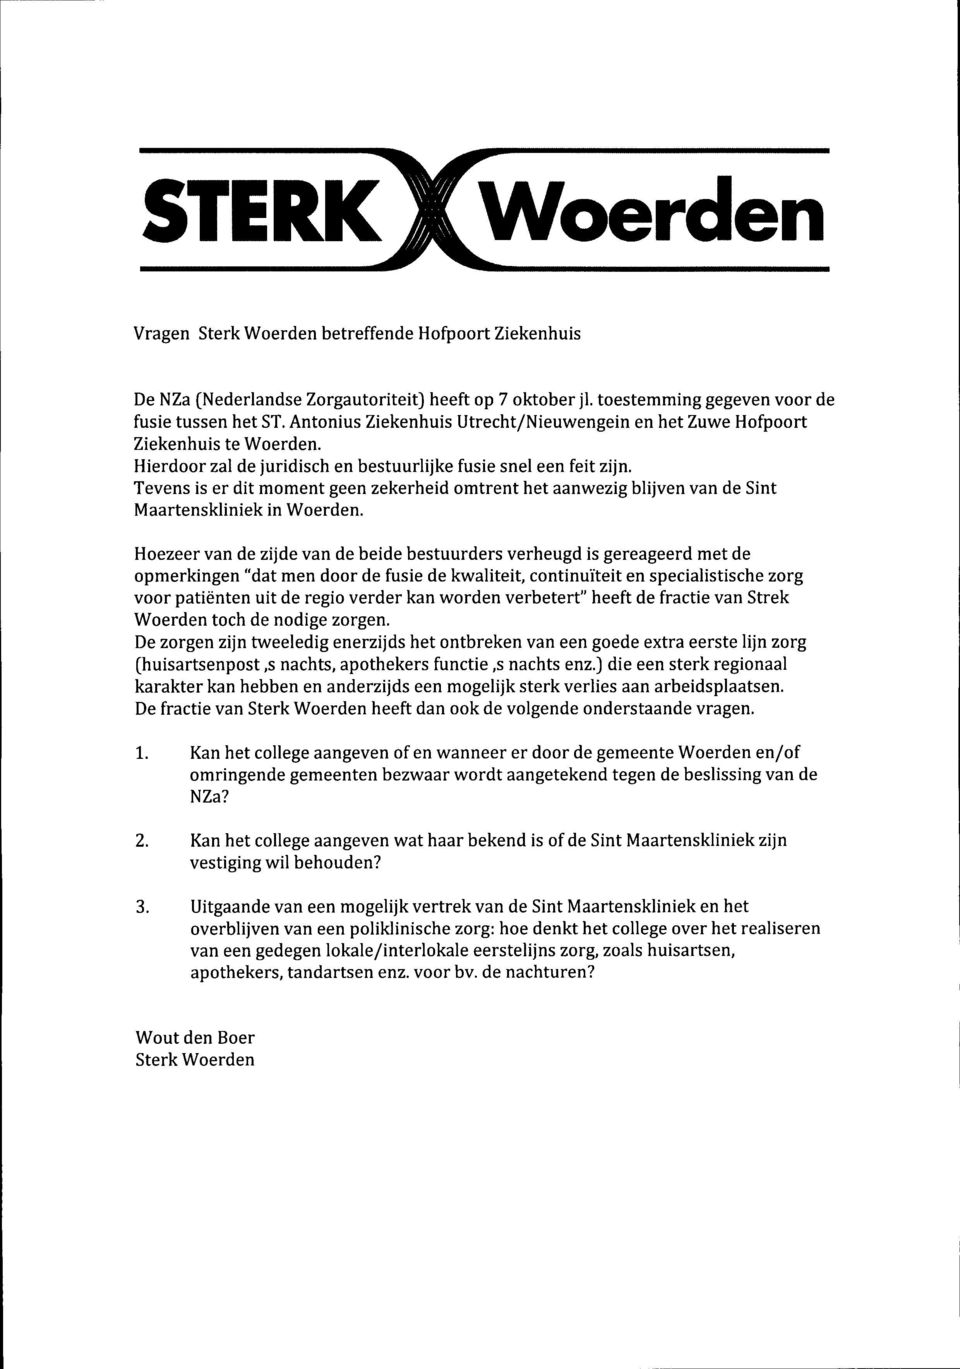 Tevens is er dit moment geen zekerheid omtrent het aanwezig blijven van de Sint Maartenskliniek in Woerden.